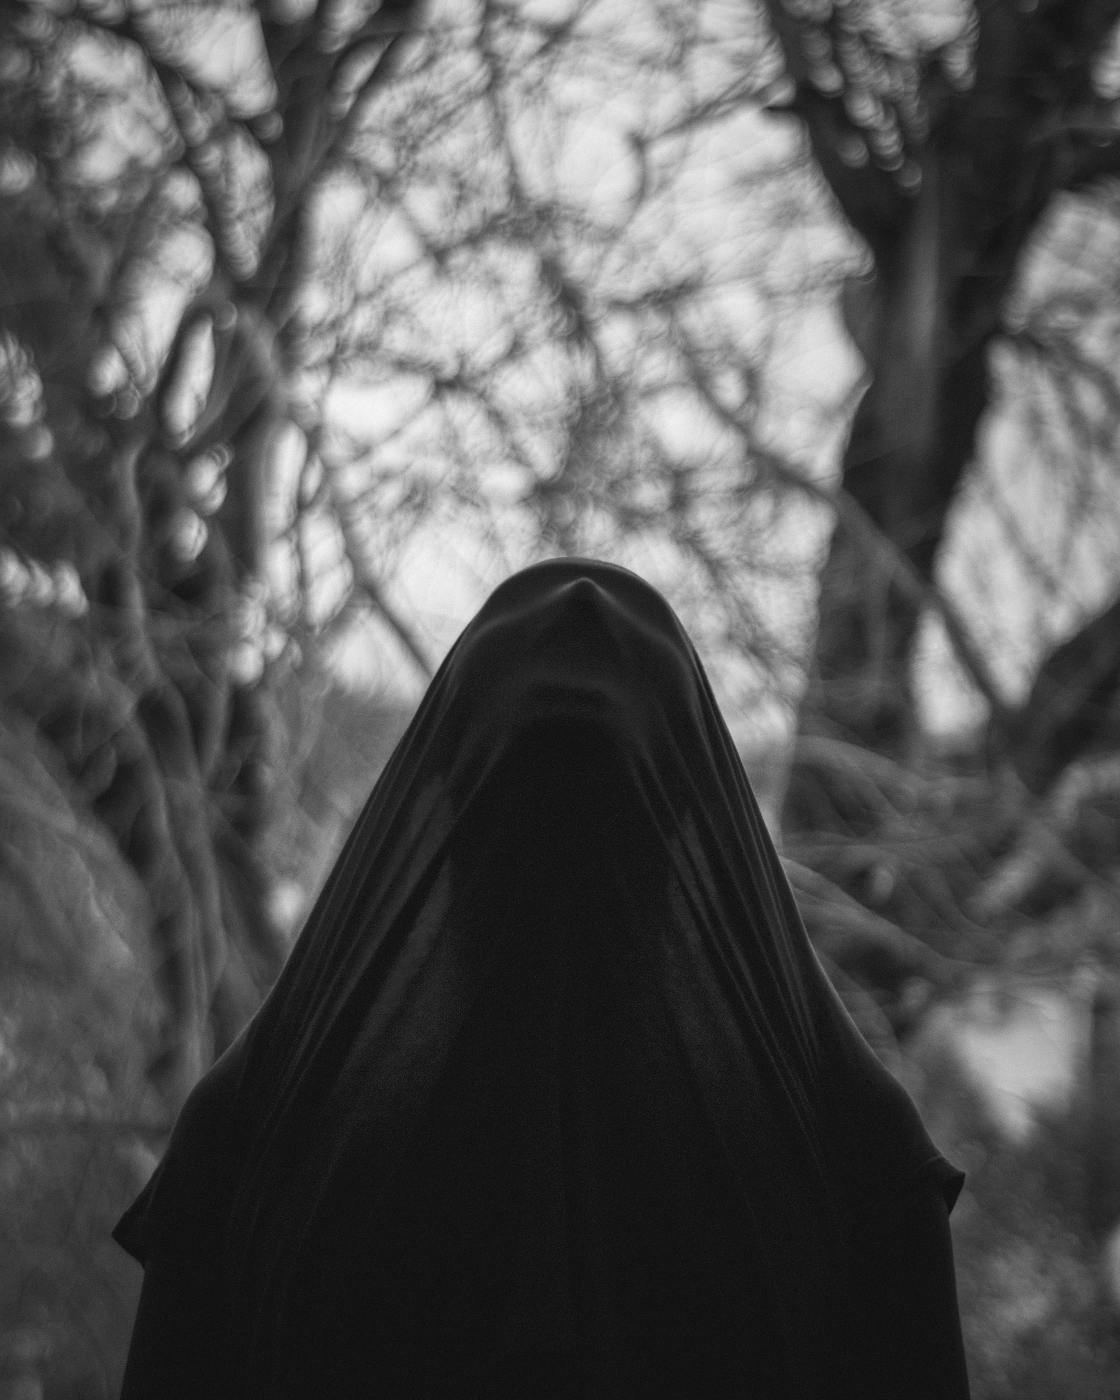 A person in a black cloak